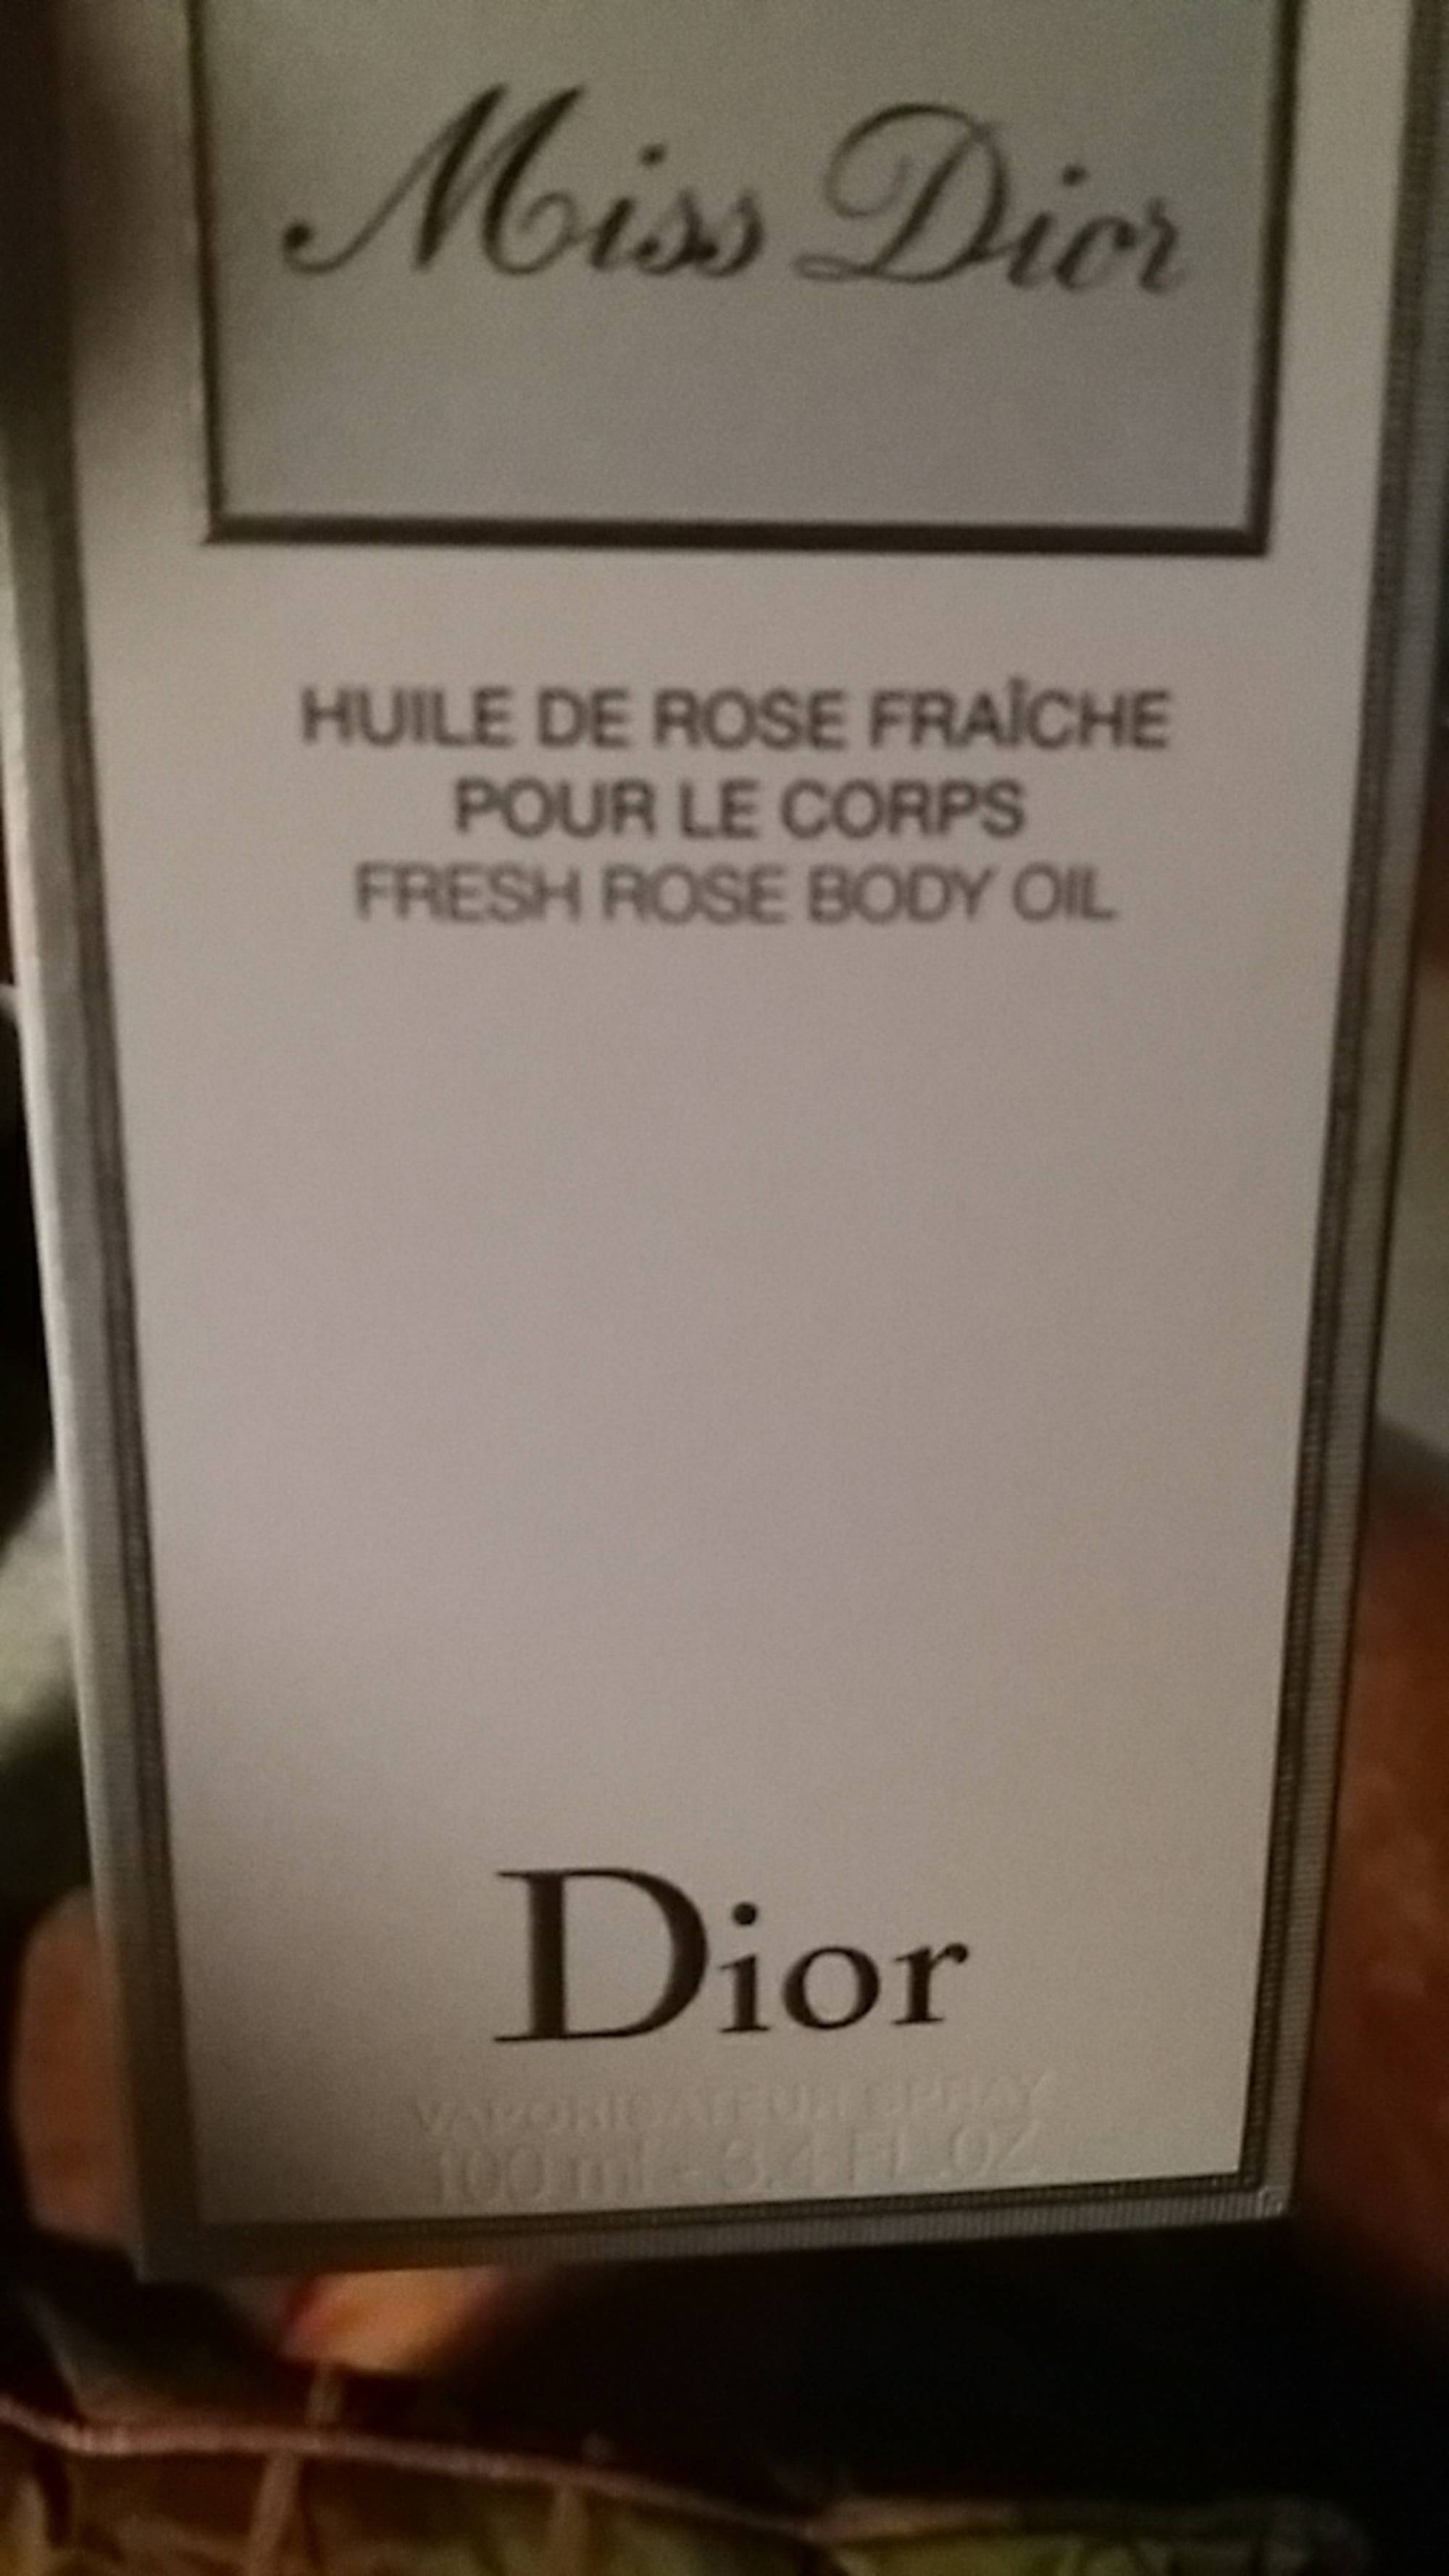 DIOR - Miss dior - Huile de rose fraîche pour le corps